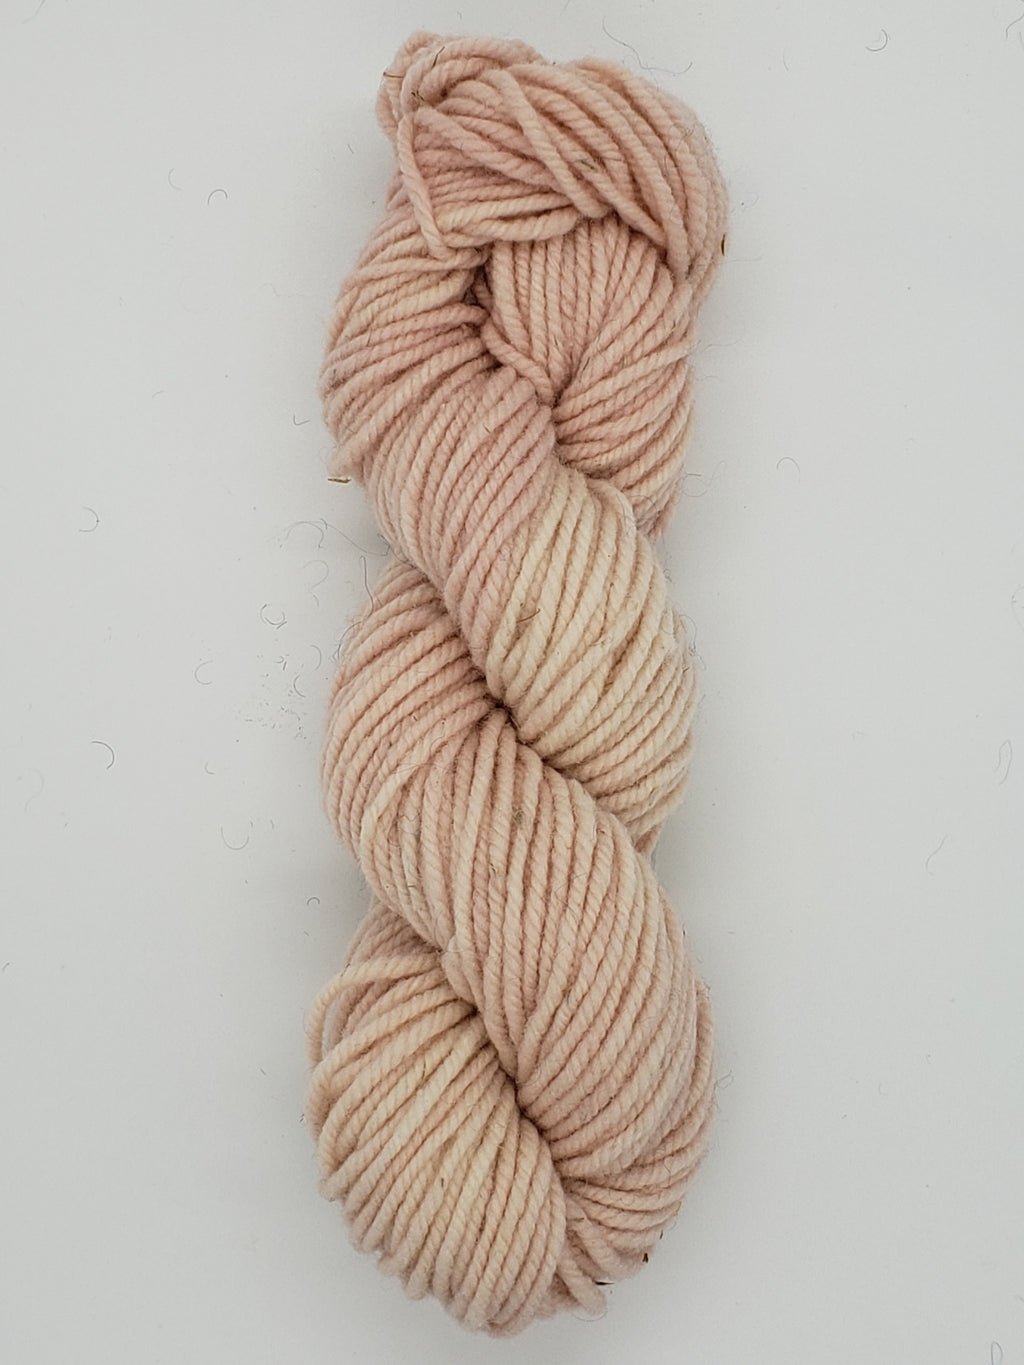 Wonder Woolen - SHELL PINK - Fleece Artist Hand Dyed Yarn - Shades of Light Pink